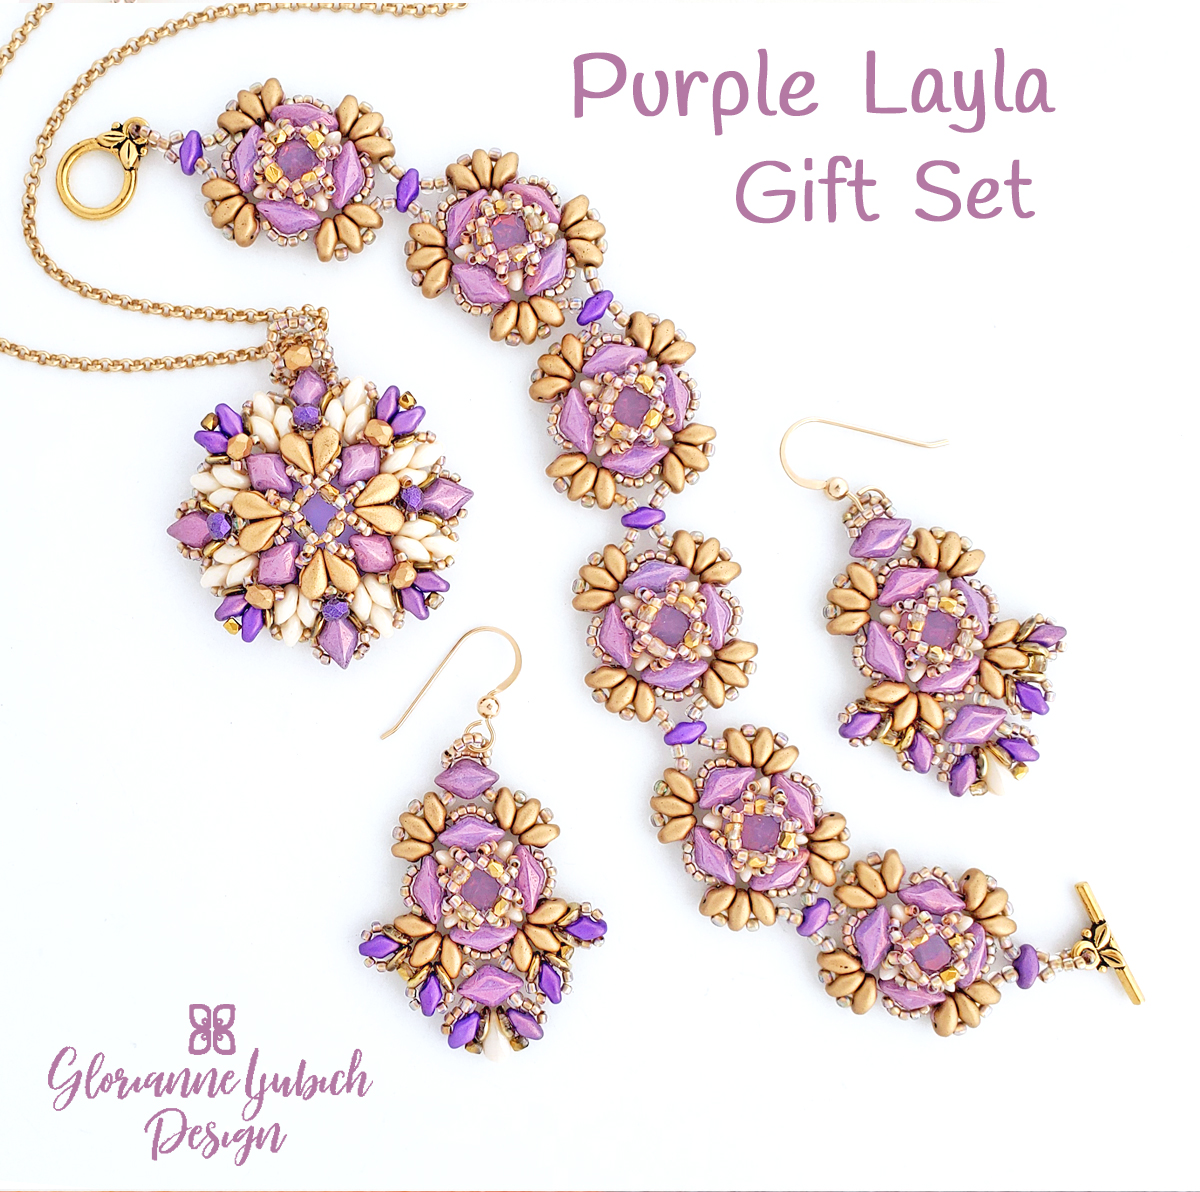 Purple Layla Bead Weaving Gift Set